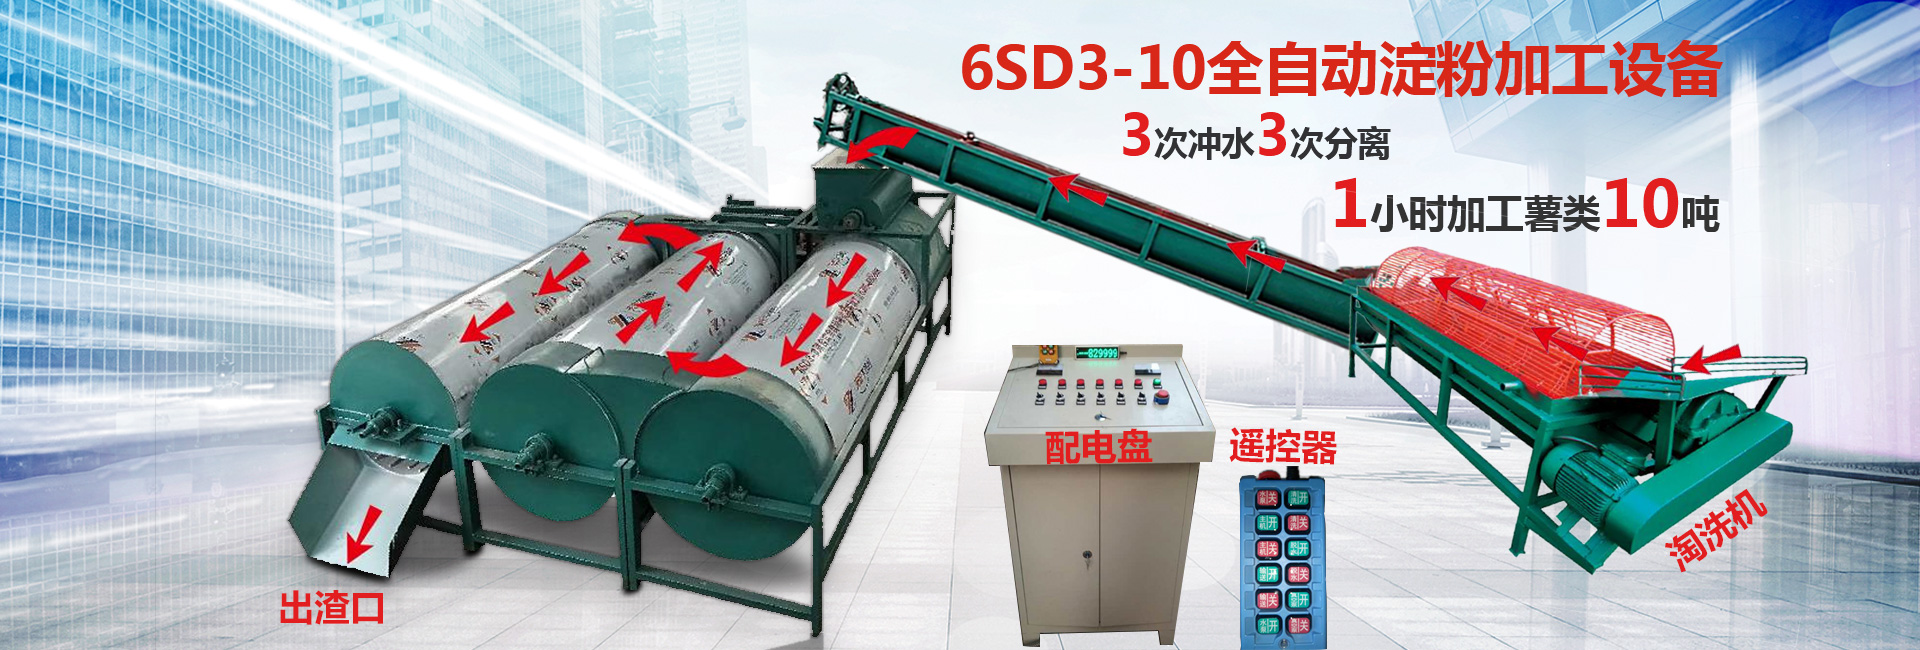 6SD3-10全自动淀粉加工设备